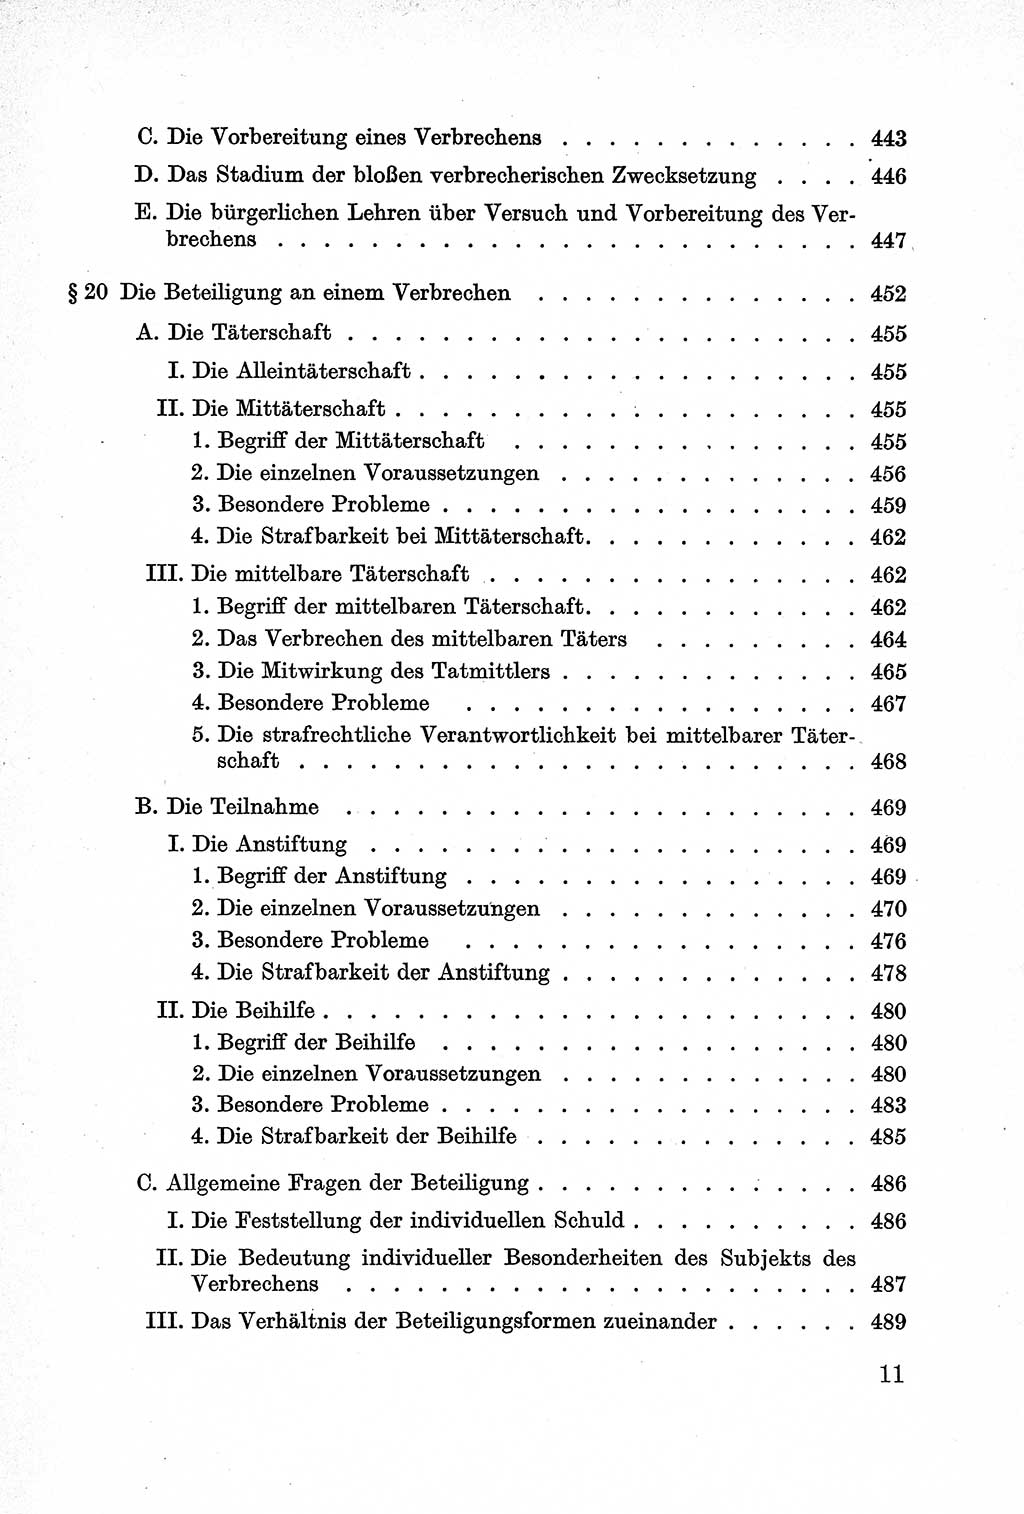 Lehrbuch des Strafrechts der Deutschen Demokratischen Republik (DDR), Allgemeiner Teil 1957, Seite 11 (Lb. Strafr. DDR AT 1957, S. 11)